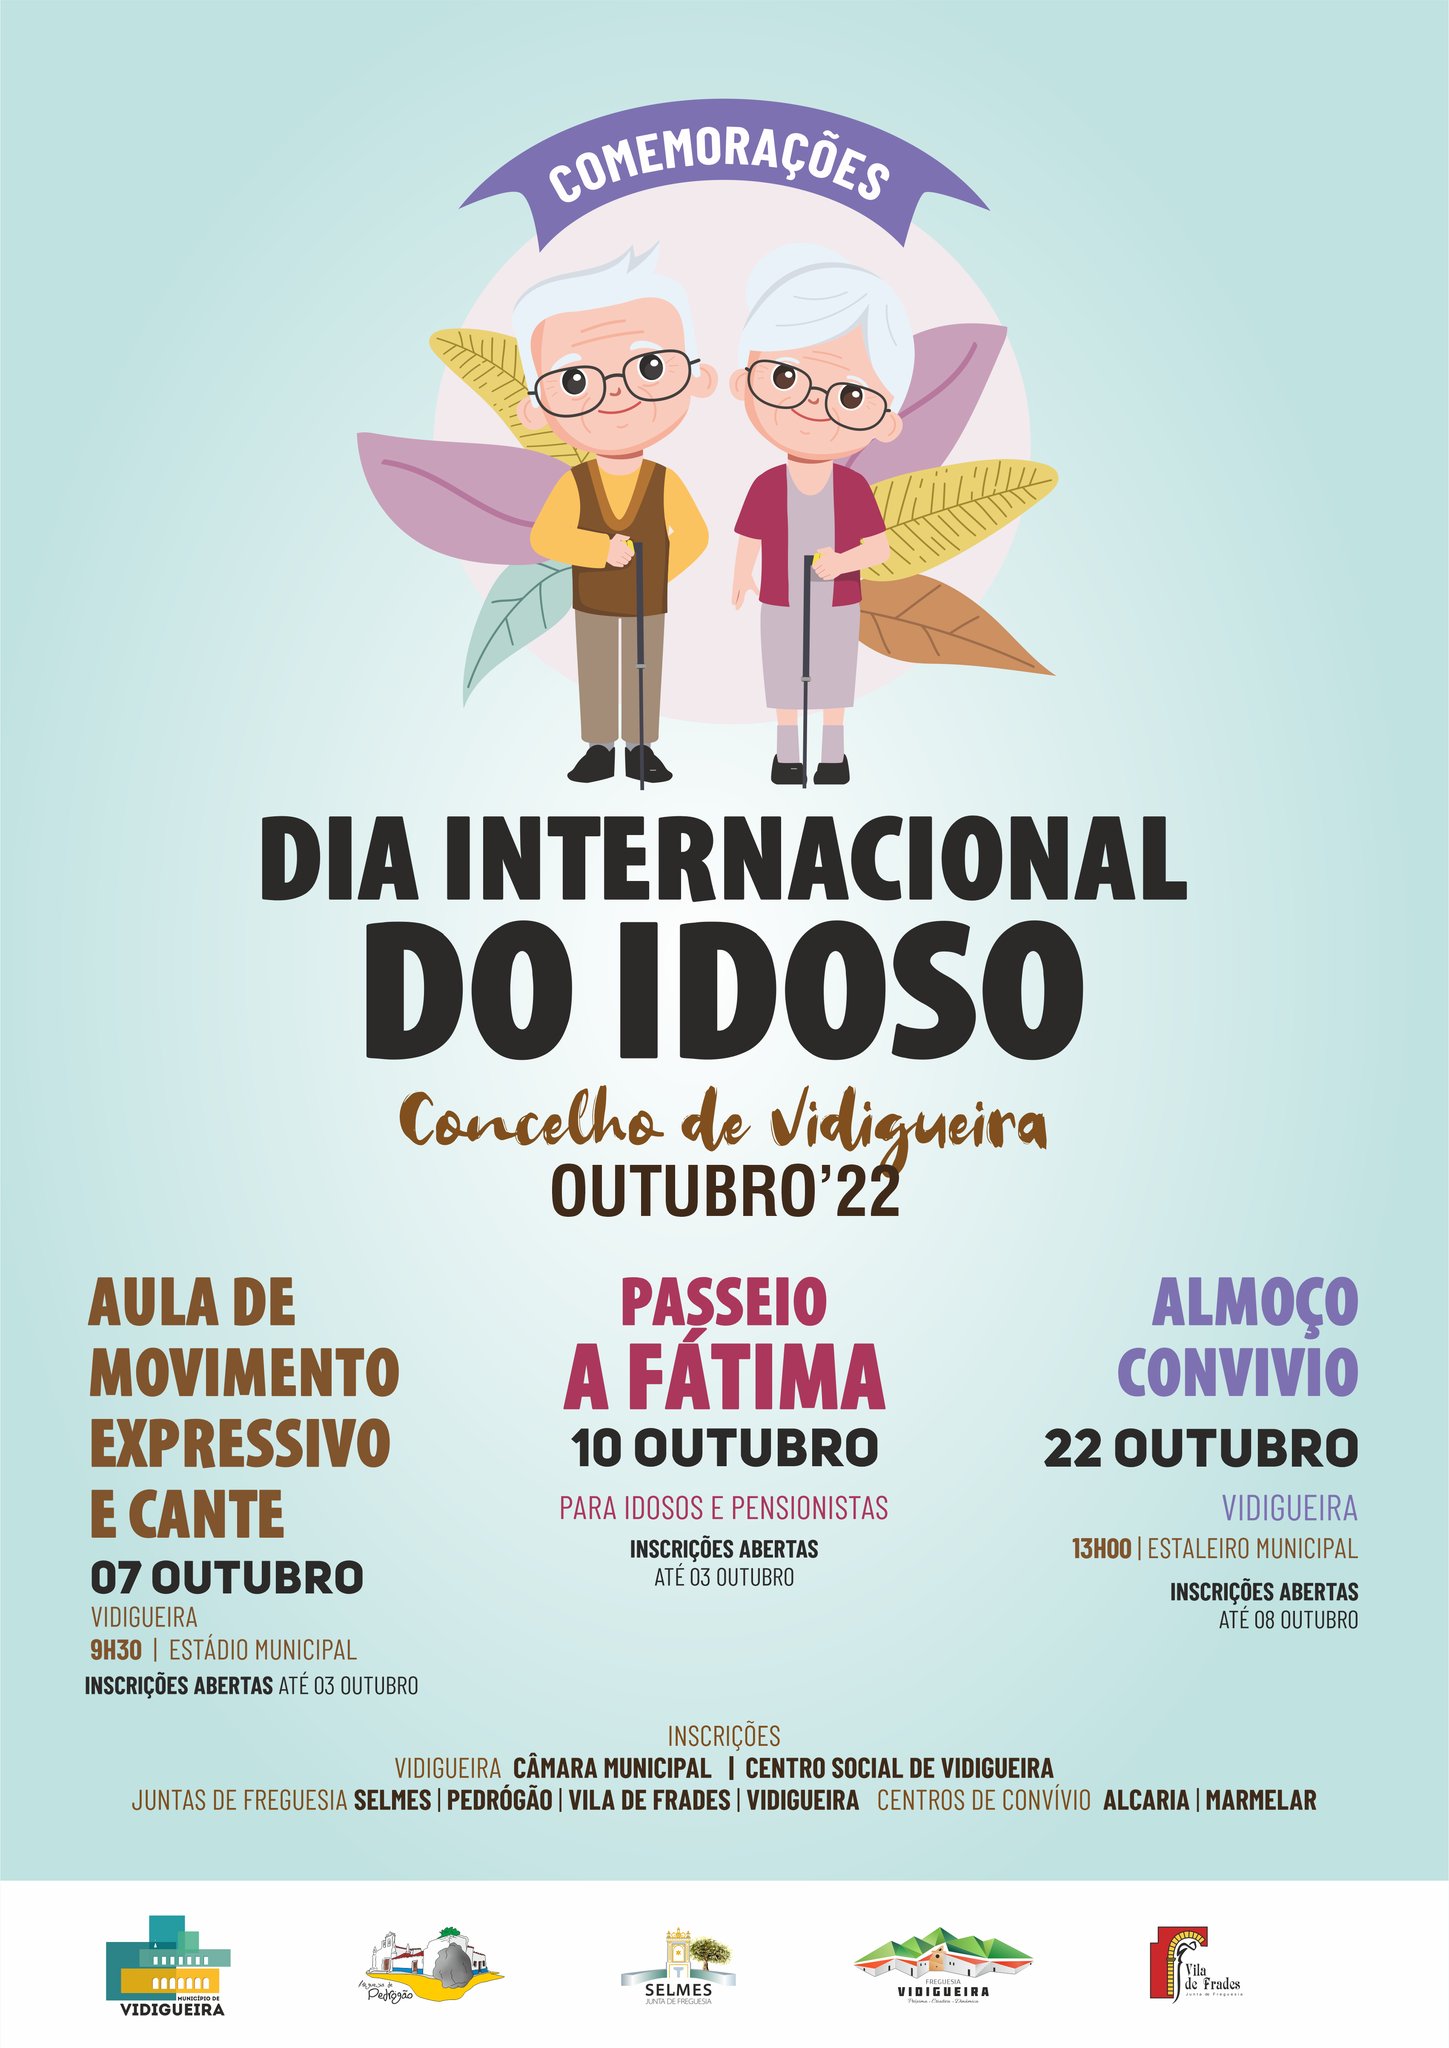 Comemorações do Dia Internacional do Idoso